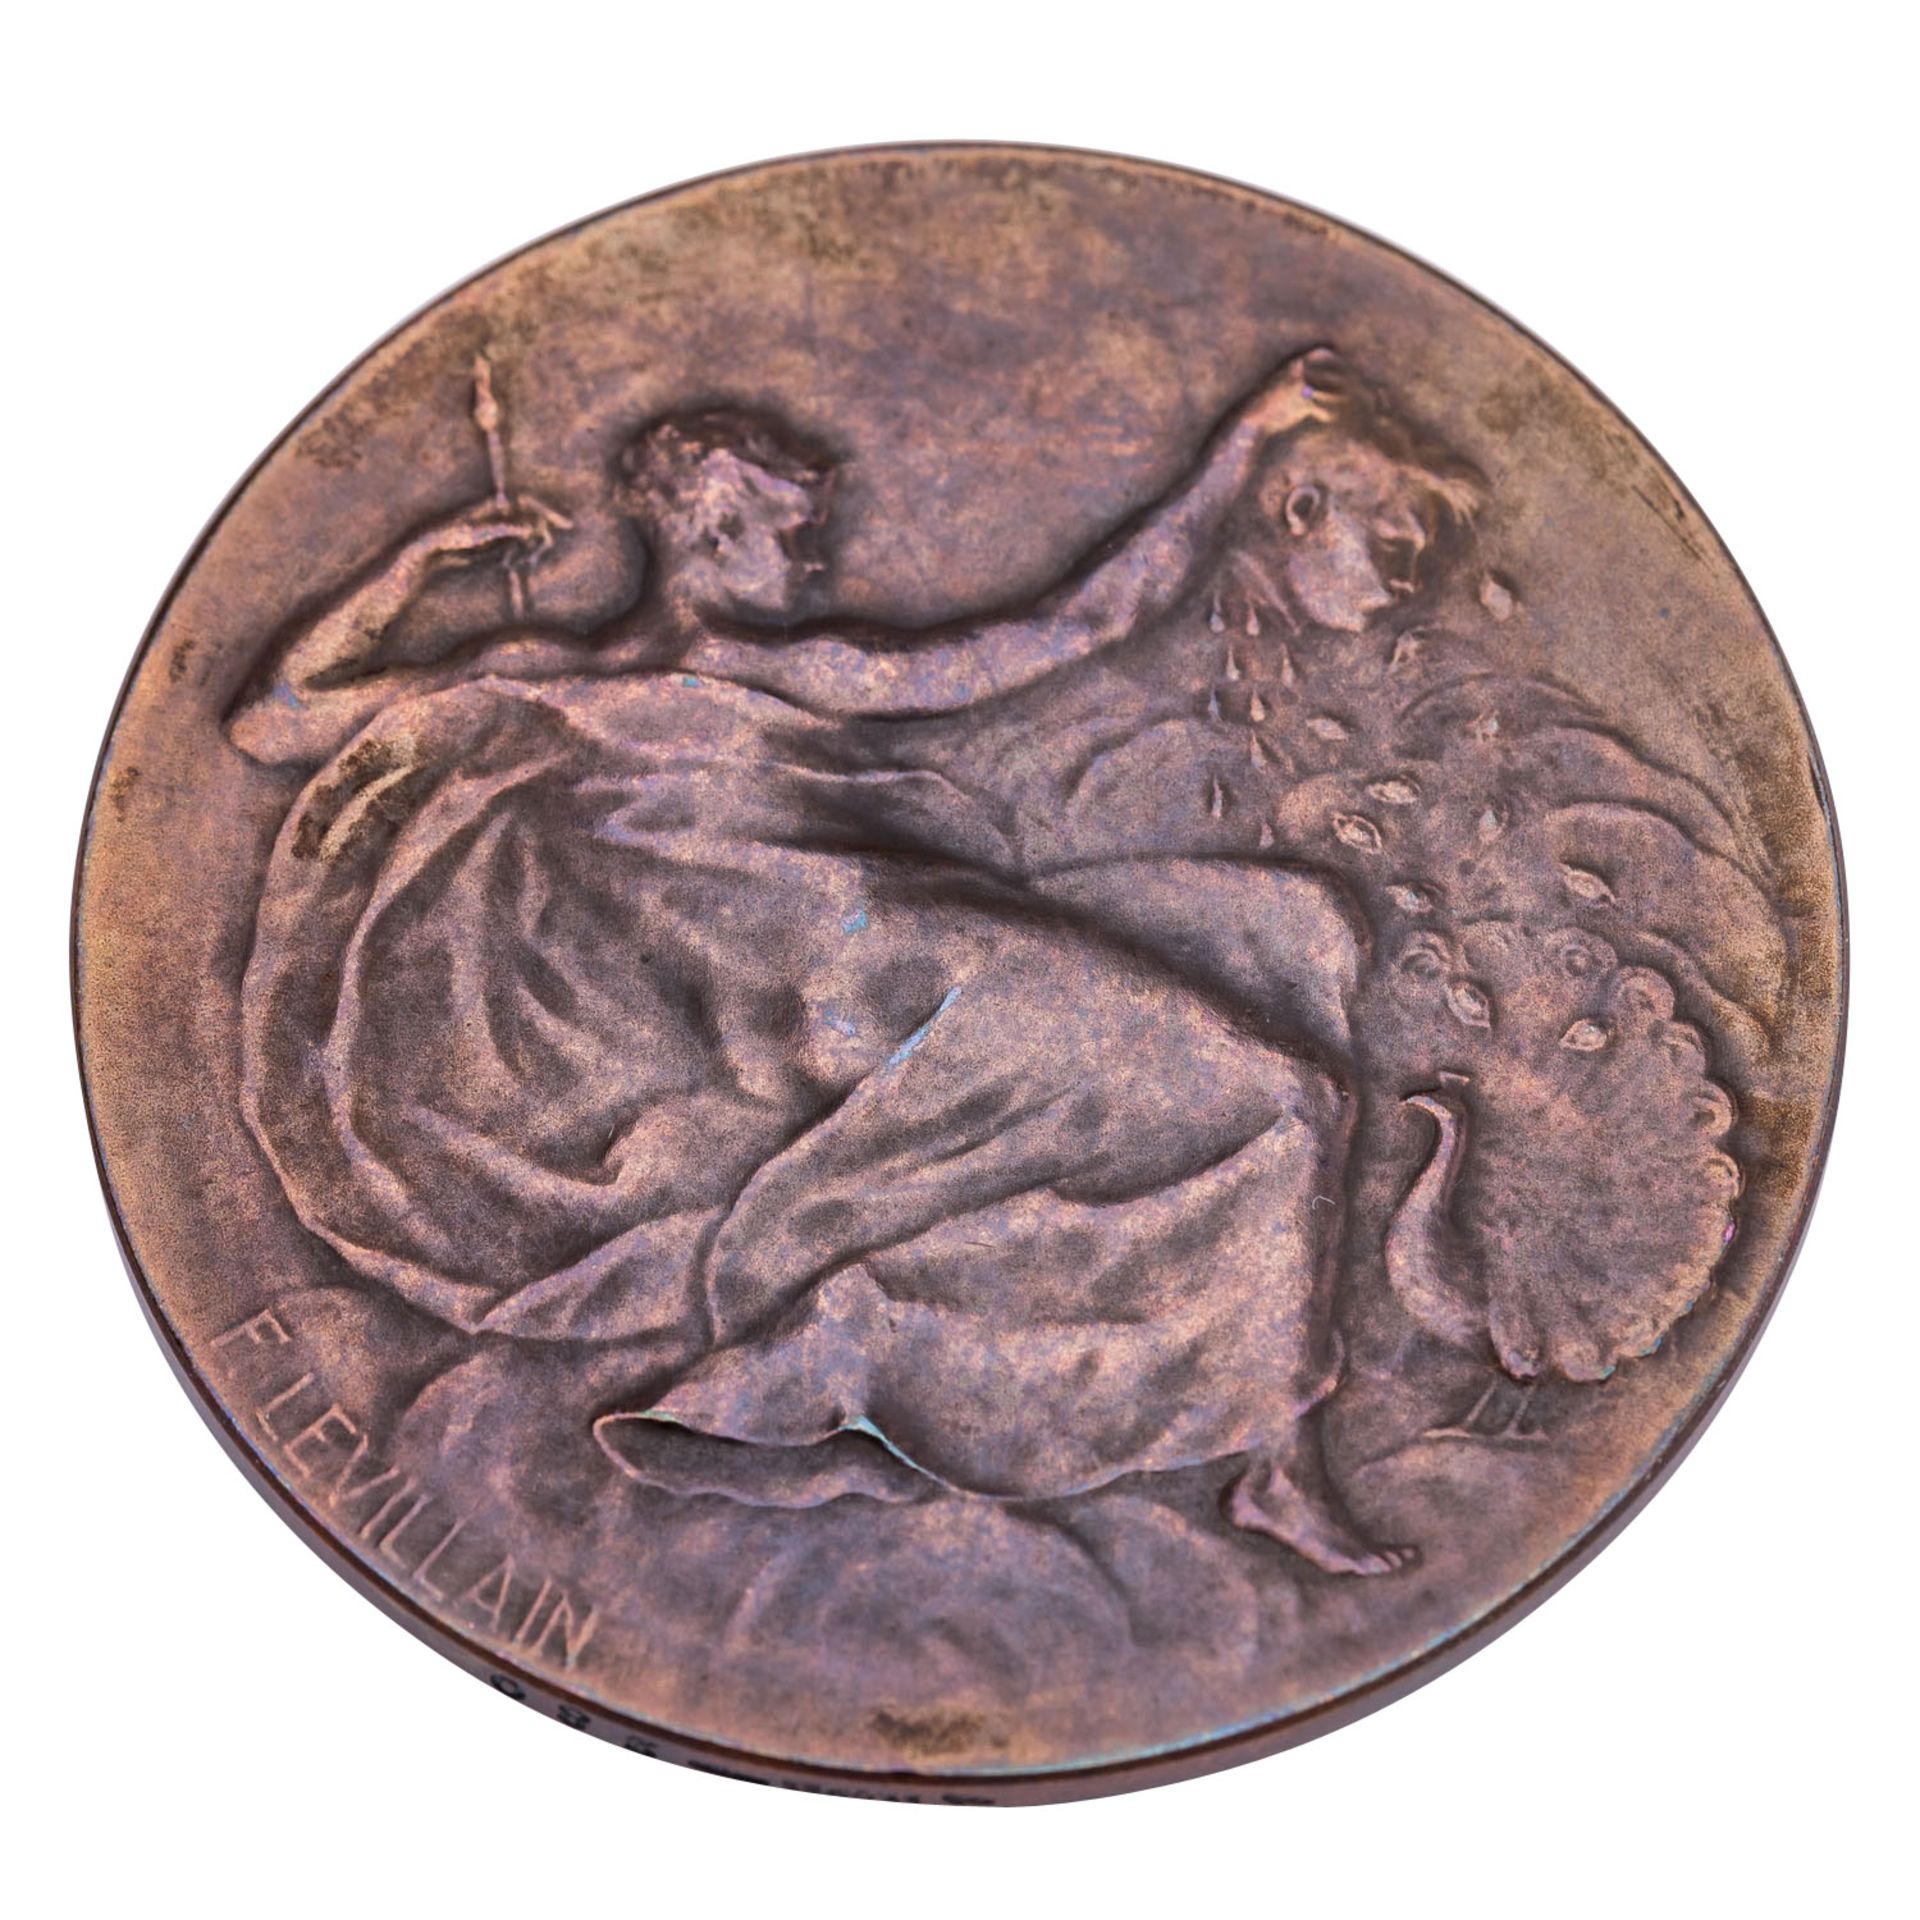 Frankreich - Bronzemedaille o.J. (1900), Levillain, Ferdinand (1837-1905), - Bild 2 aus 2